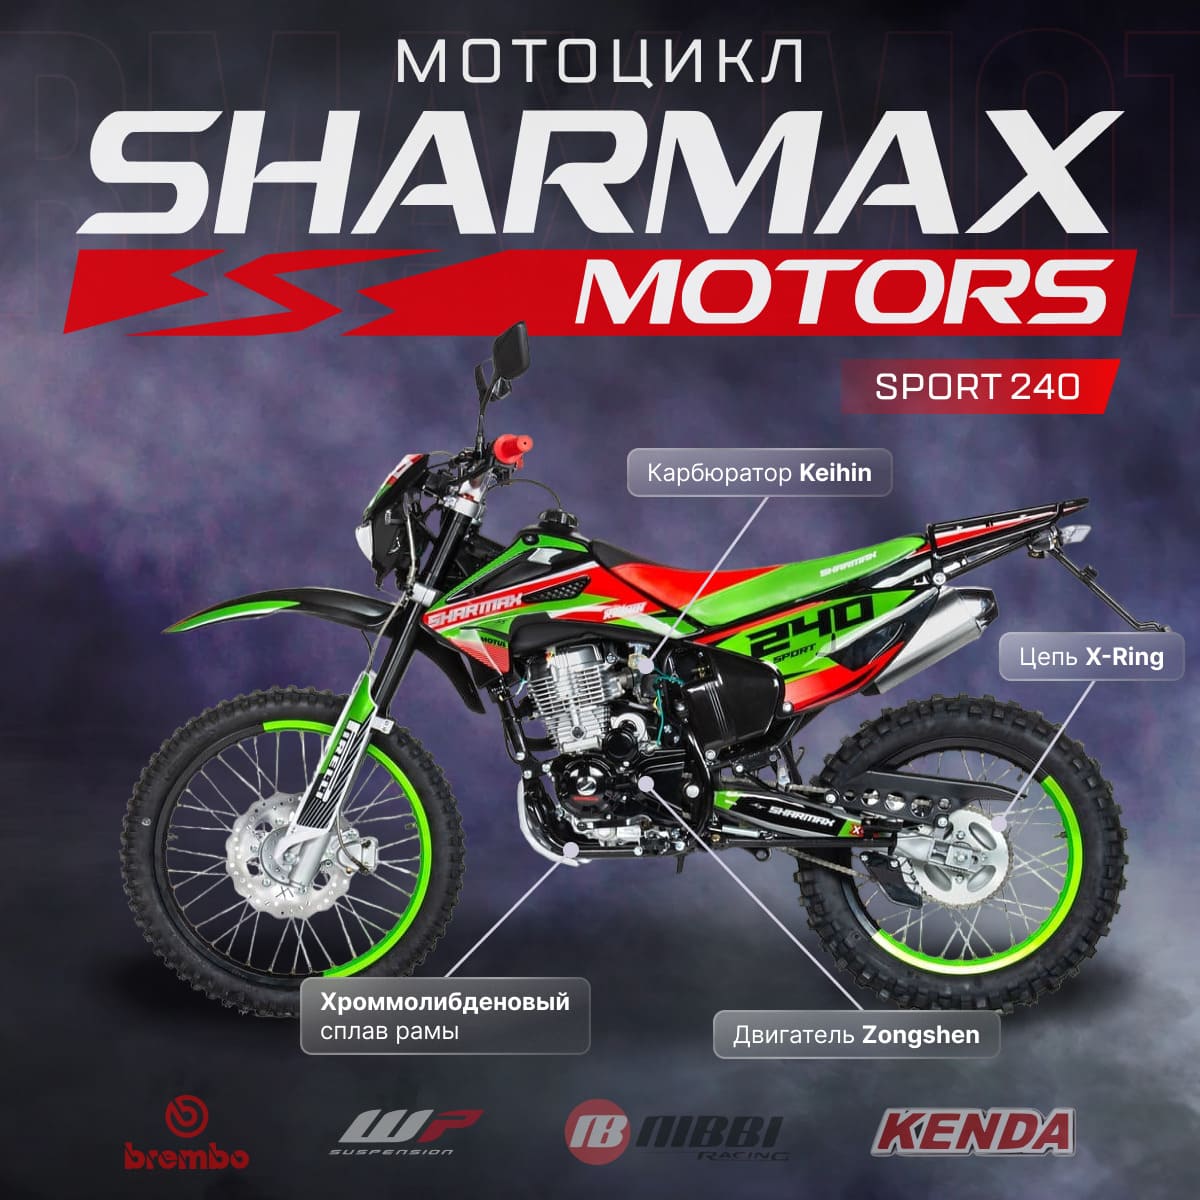 Мотоцикл кроссовый эндуро SHARMAX MOTORS SPORT 240 в Чебоксарах